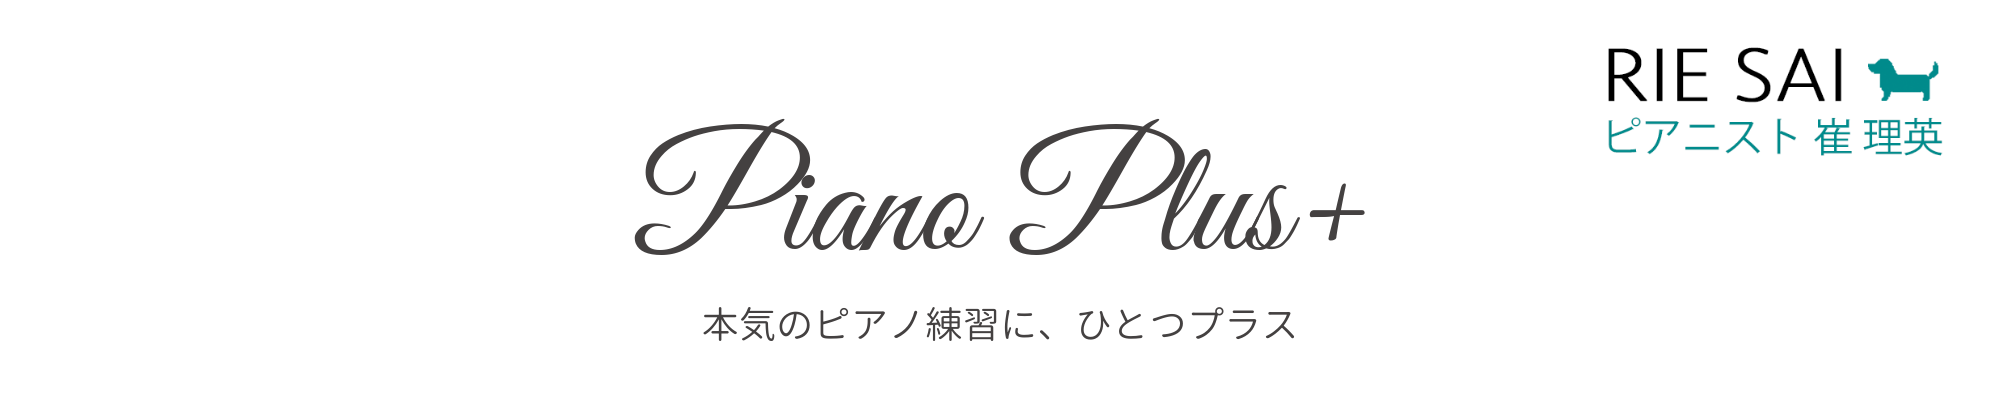 ハノン スケールとアルペジオの使い方 ただの指練習じゃない Piano Plus ピアノプラス